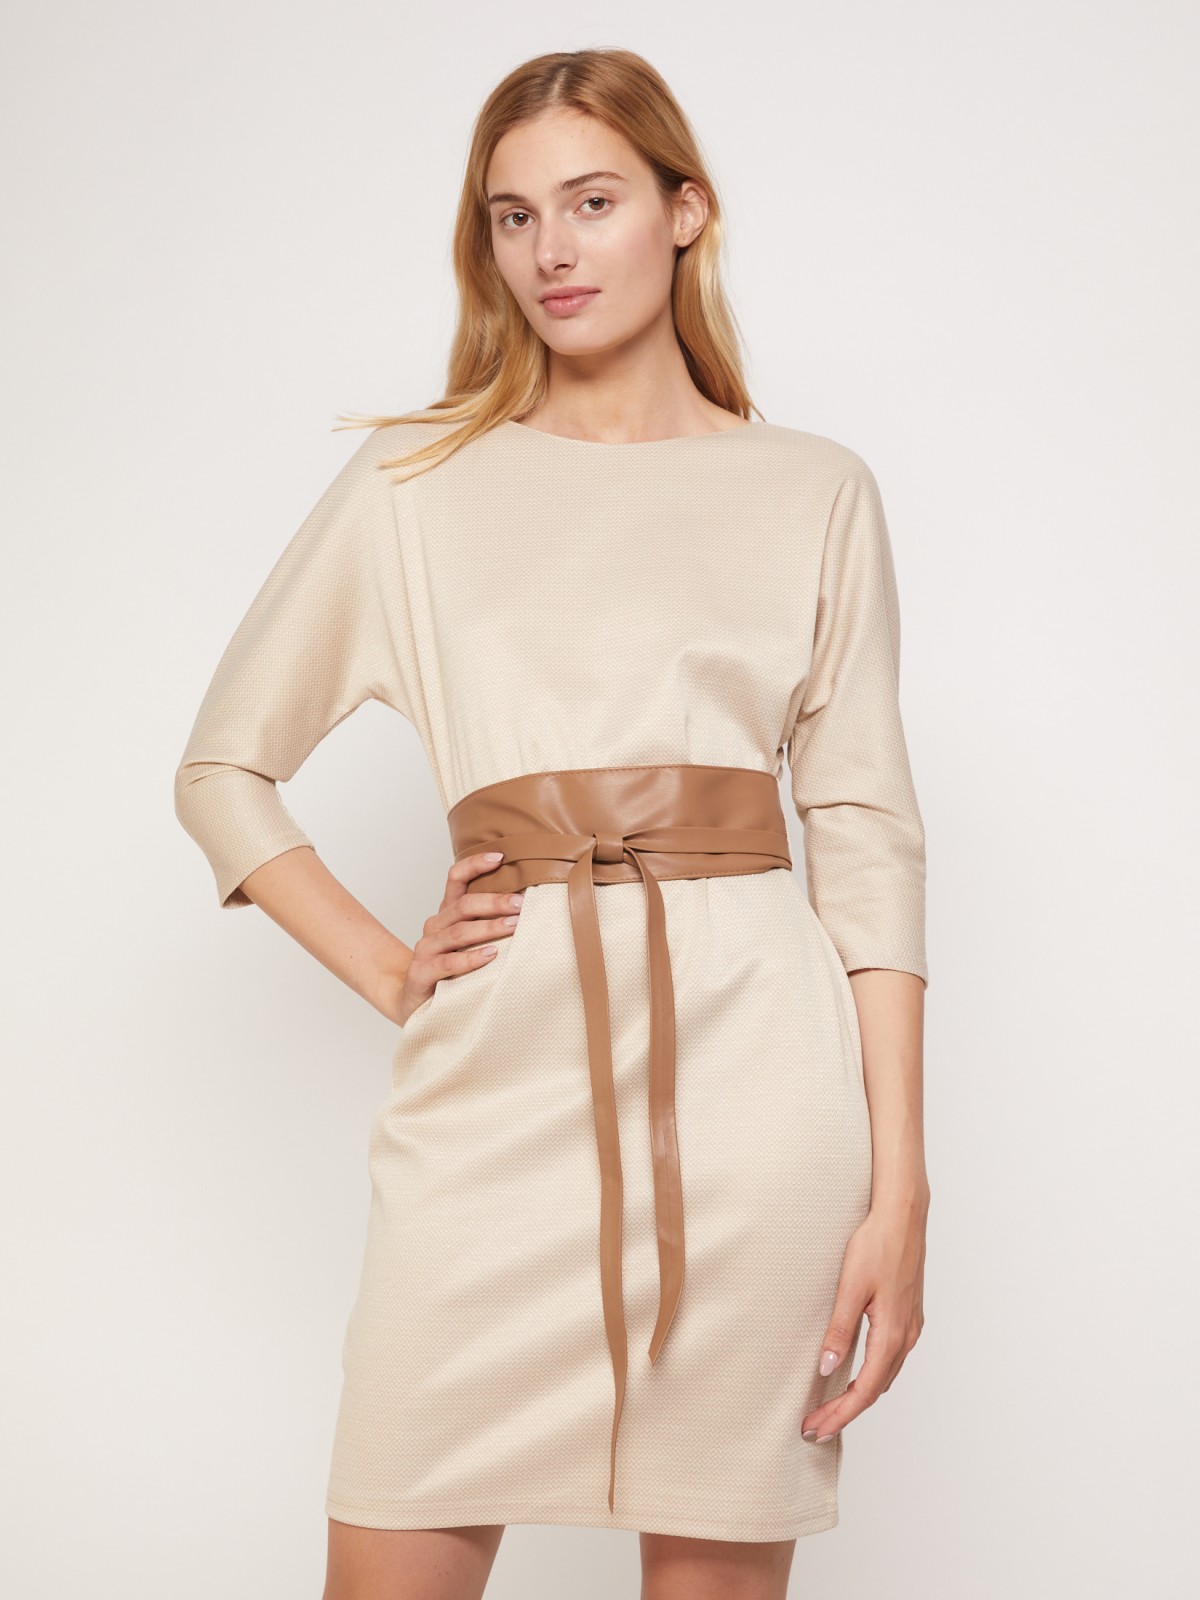 Платье мини из блестящего материала с поясом zolla 02134819F073, цвет бежевый, размер XS - фото 2